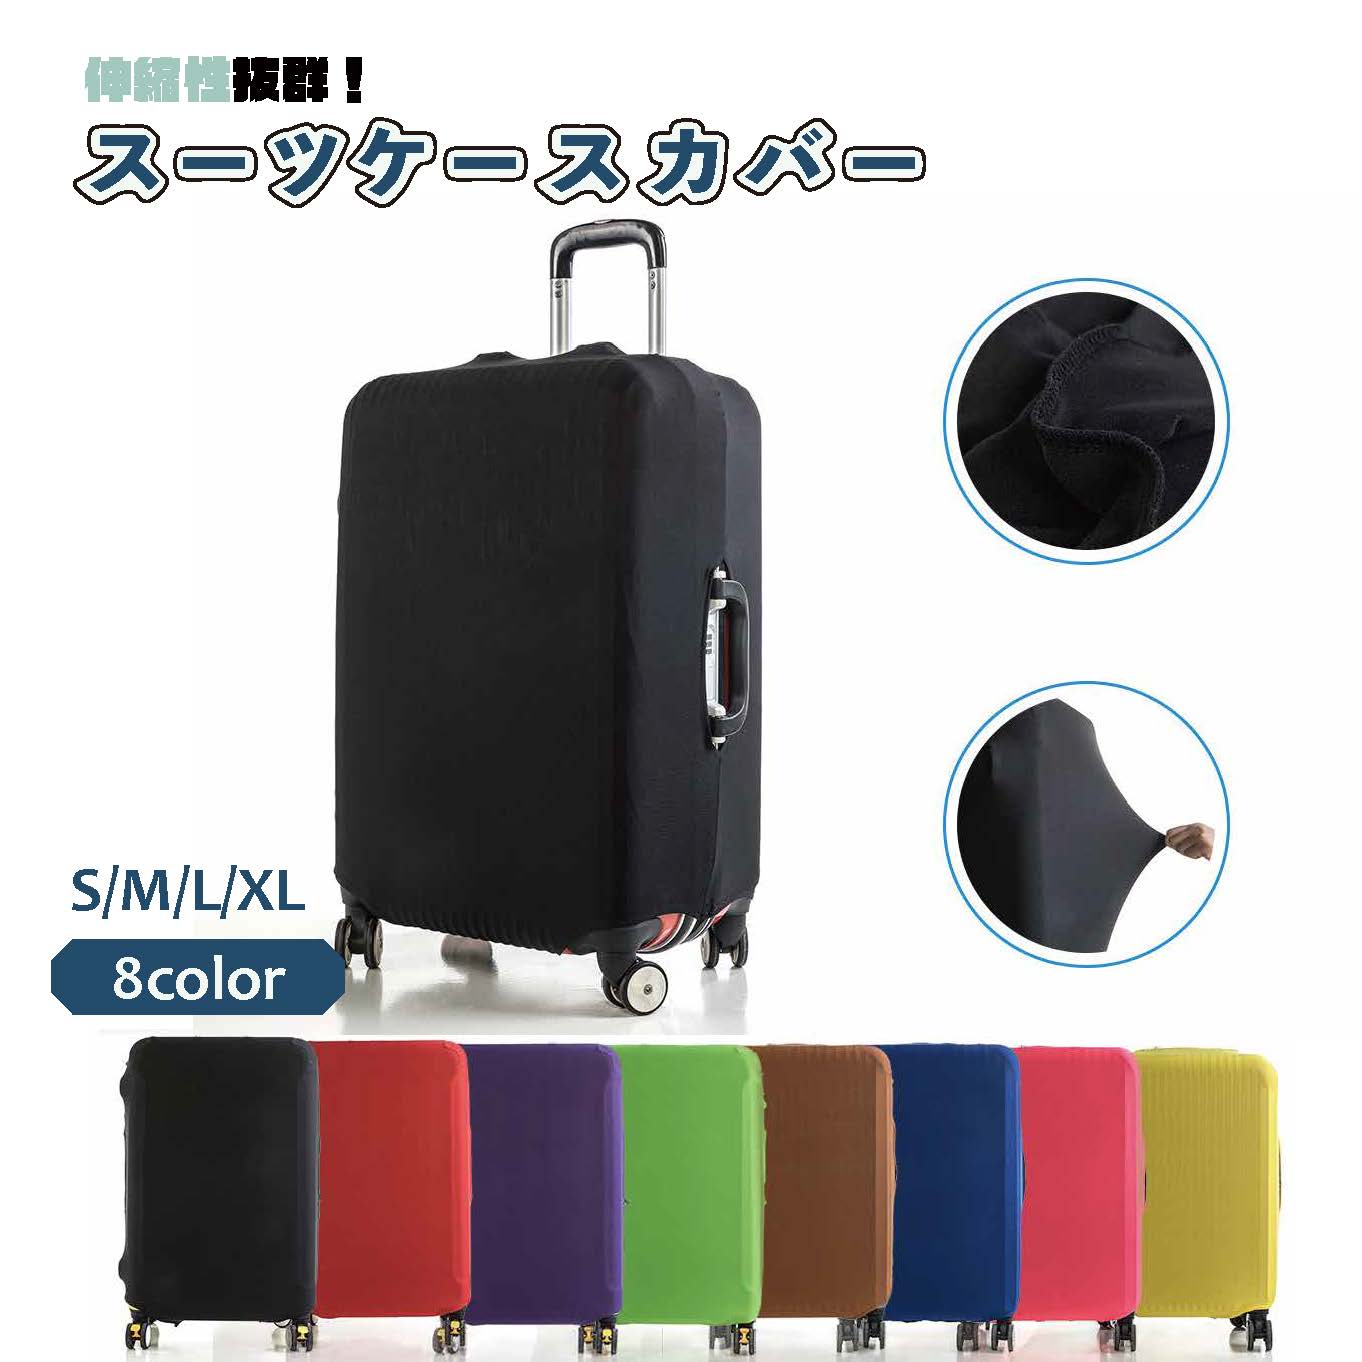 スーツケースカバー 伸縮 おしゃれ シンプル 黒 S M L XL キャリー 